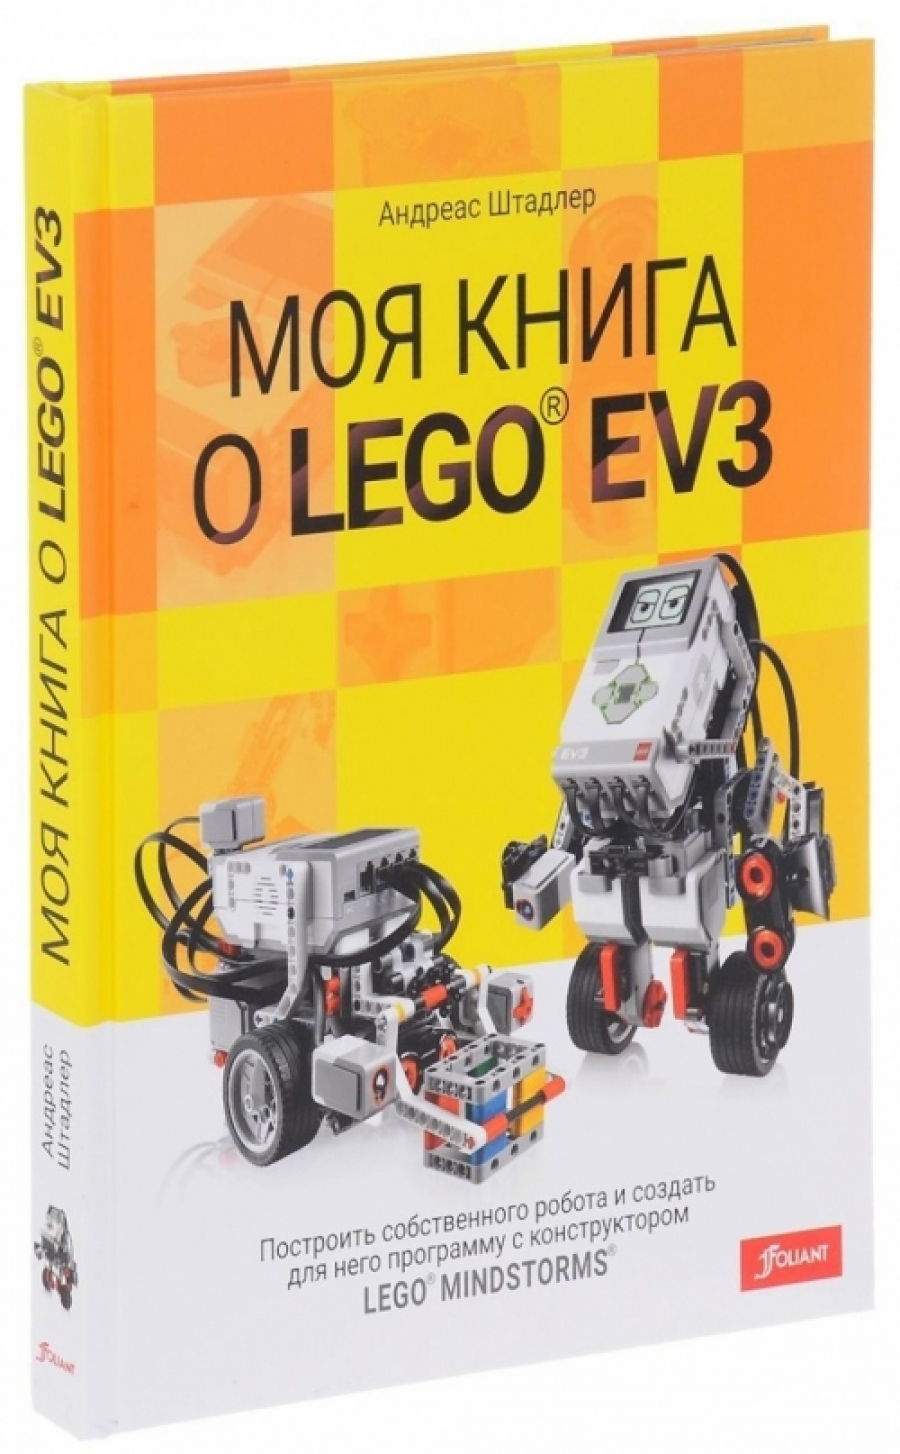 Штадлер А. Моя книга о LEGO EV3 